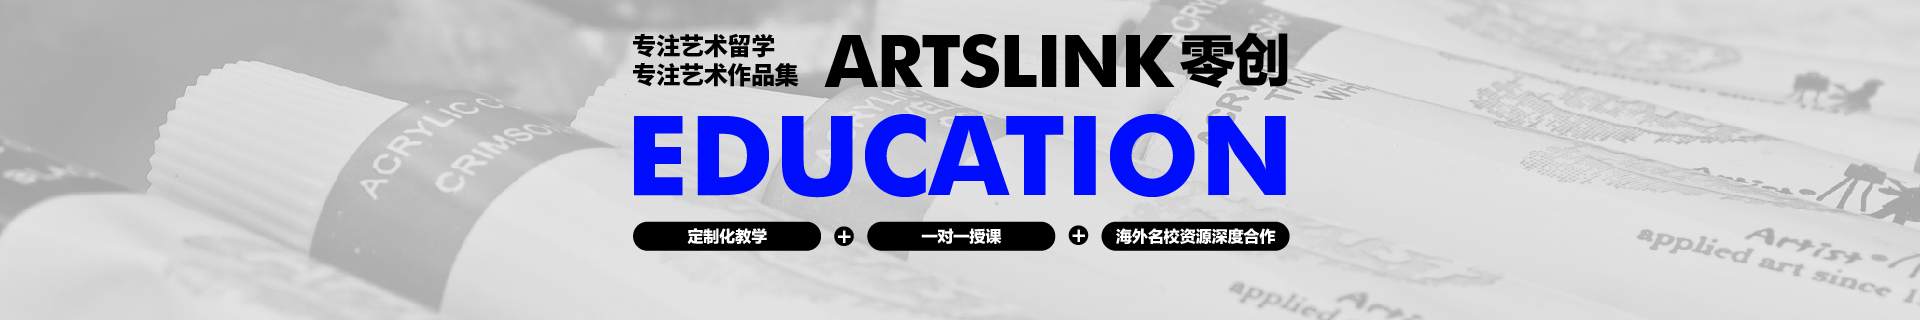 苏州零创国际艺术教育